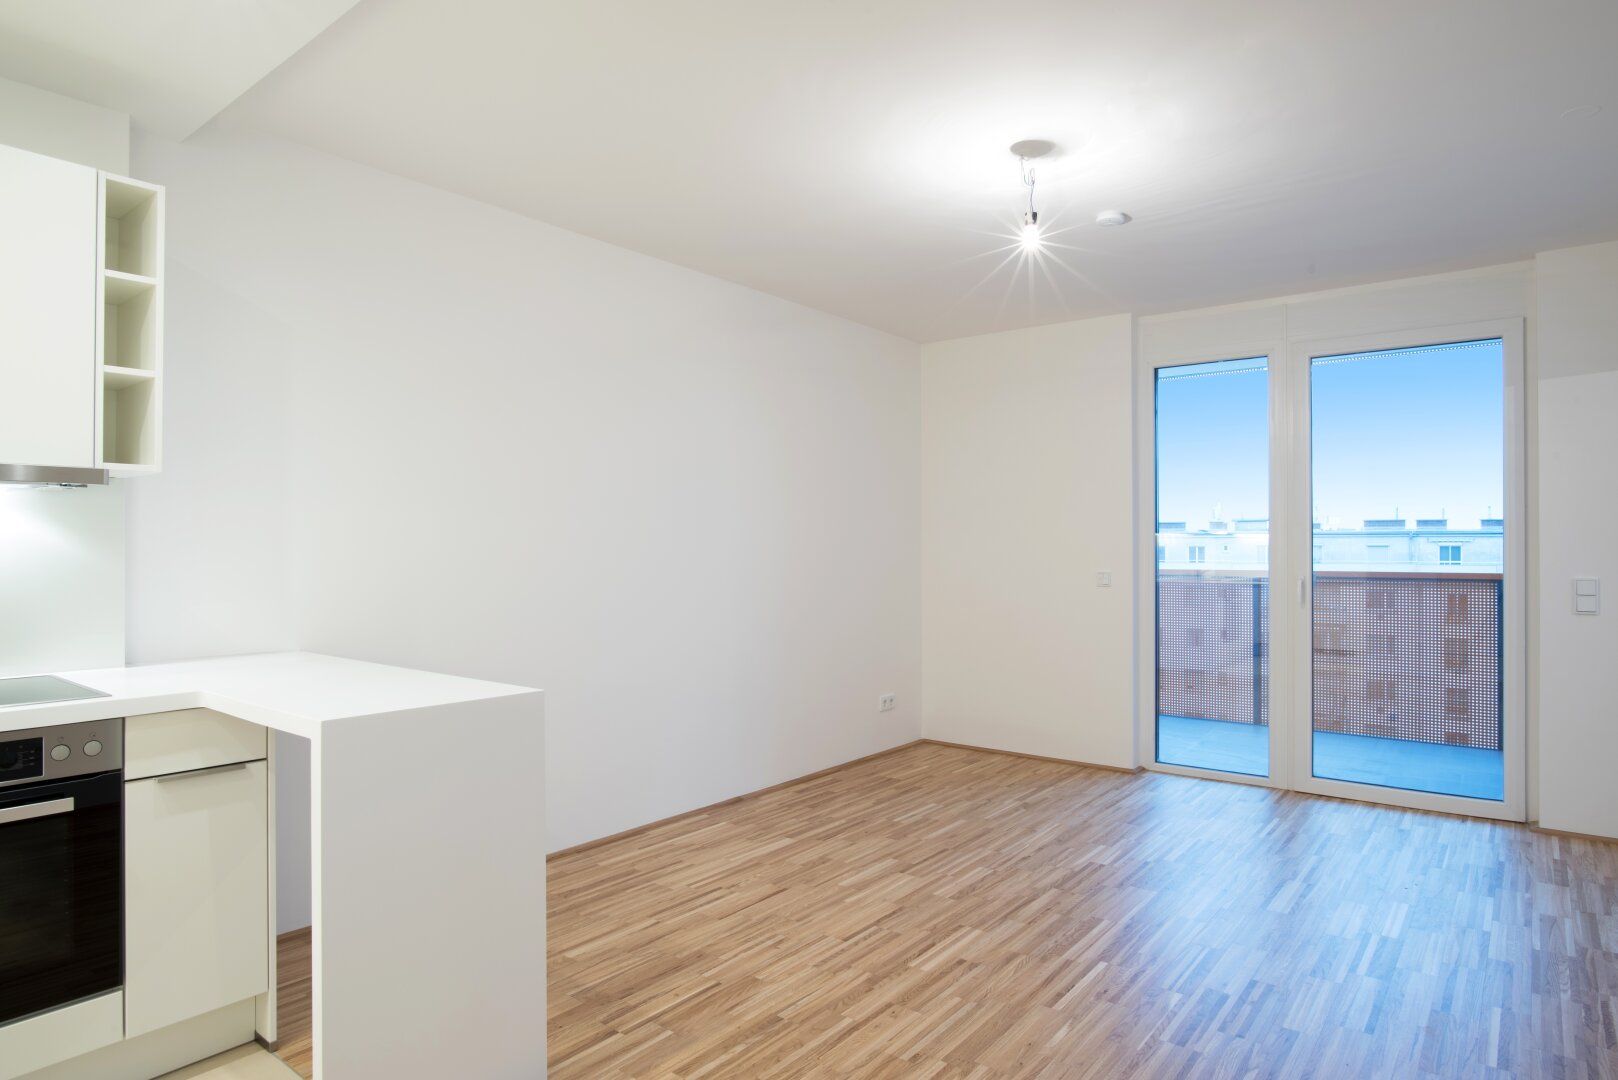 2-Zimmer-Wohnung in Top-Lage mit Balkon und Ausblick, Fußbodenheizung und - Kühlung!